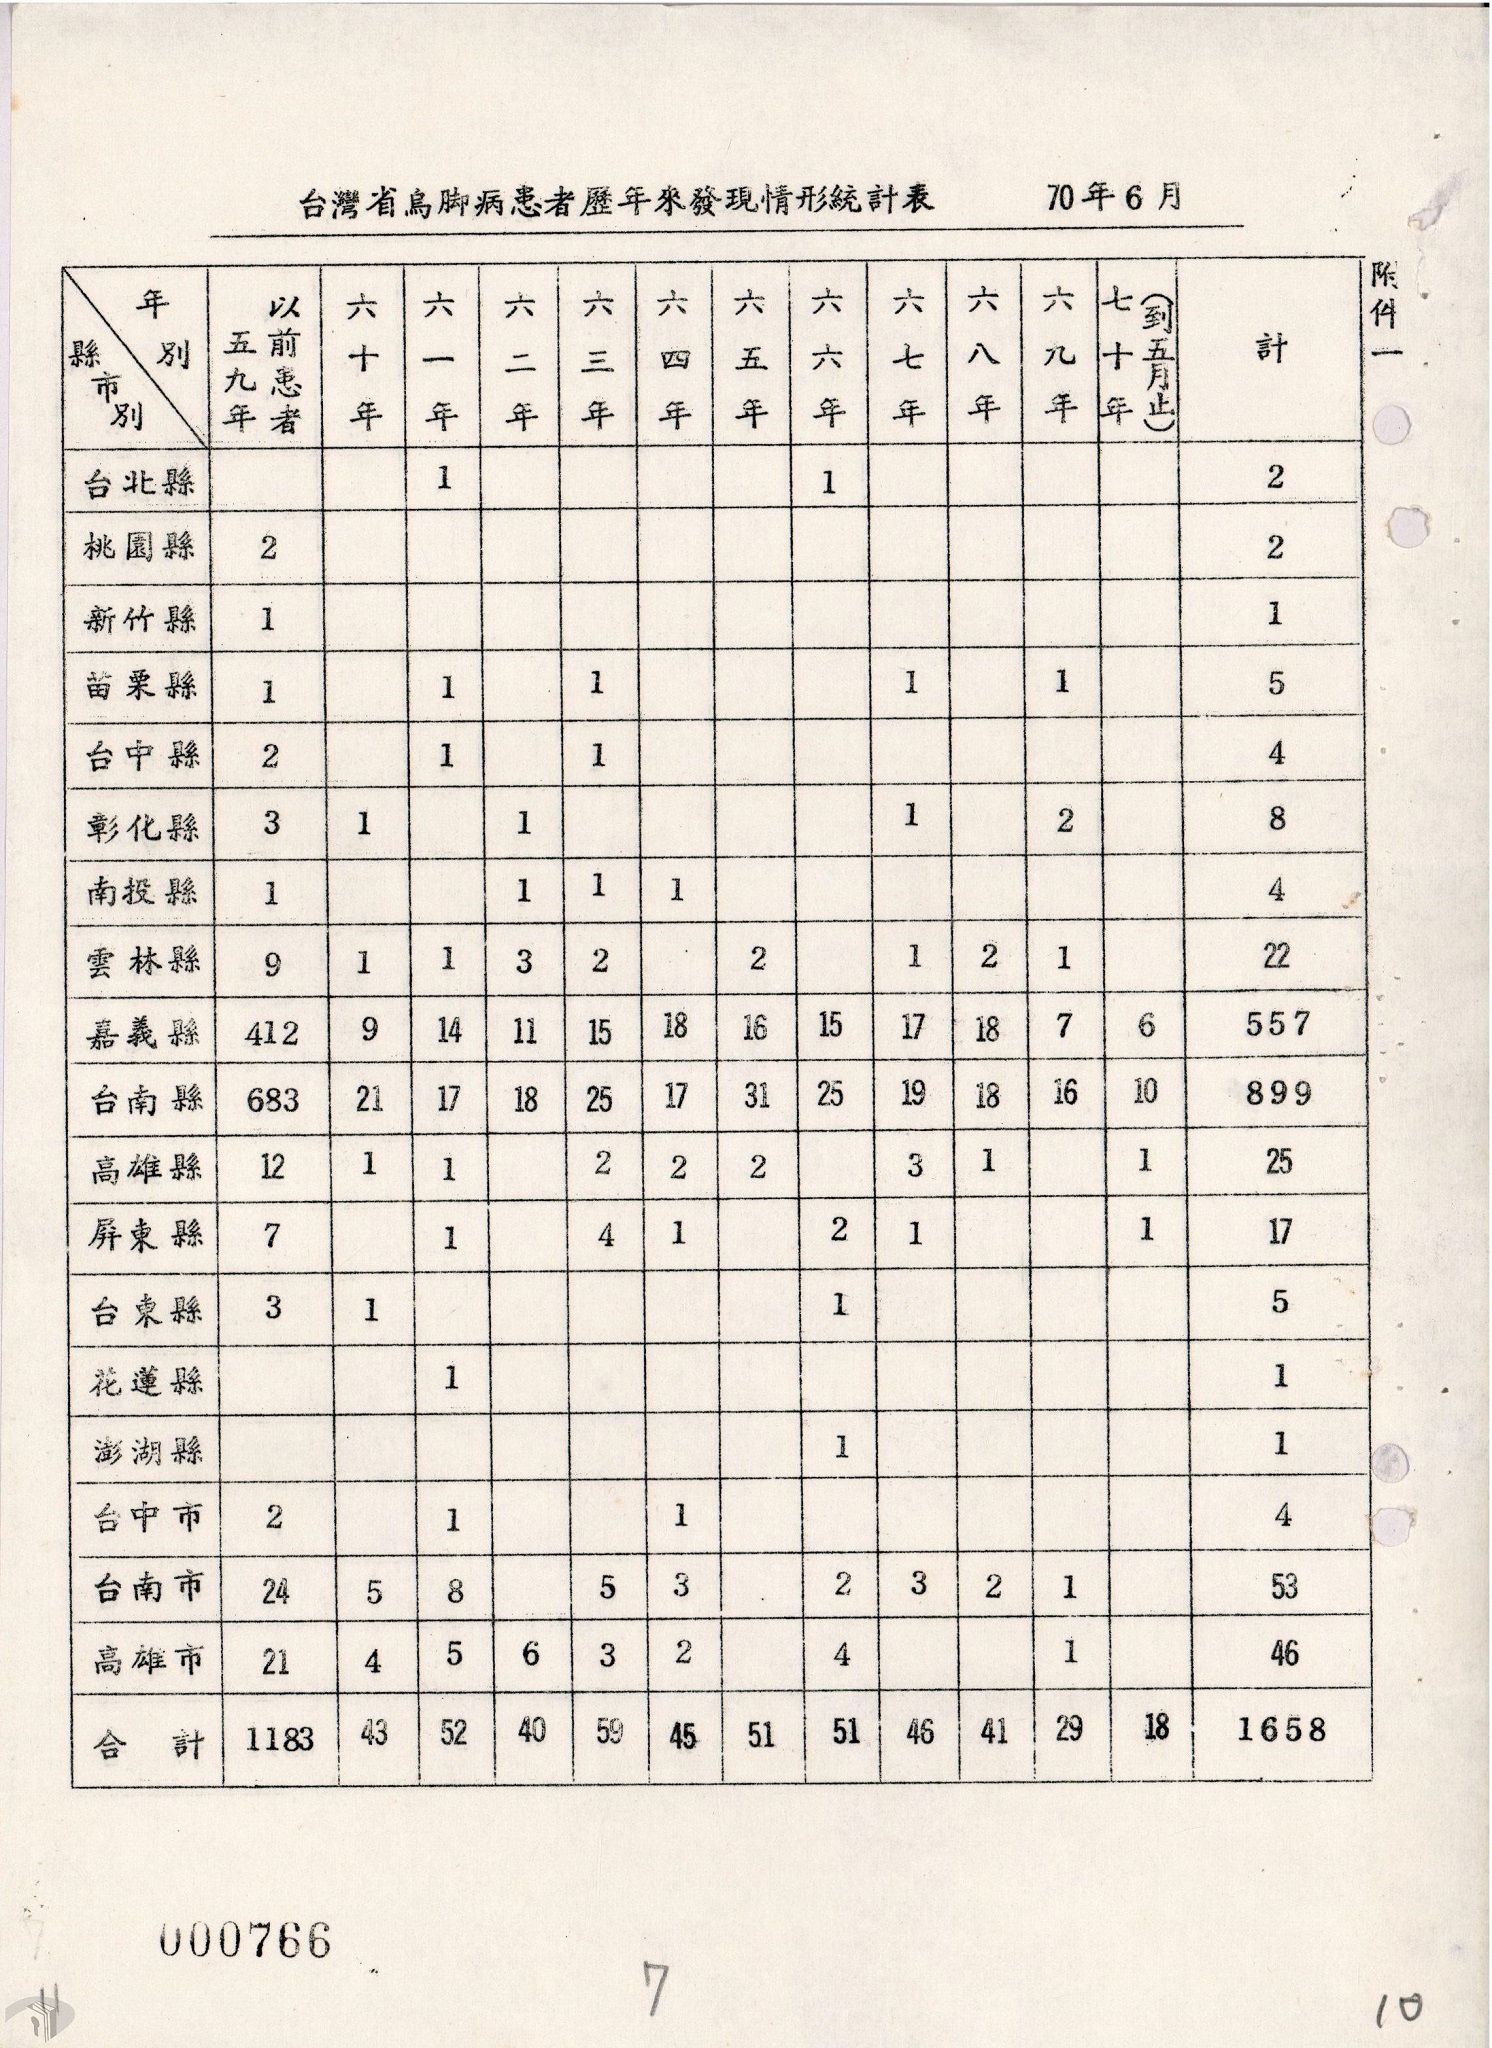 圖10 臺灣省烏腳病患者歷年來發現情形統計表